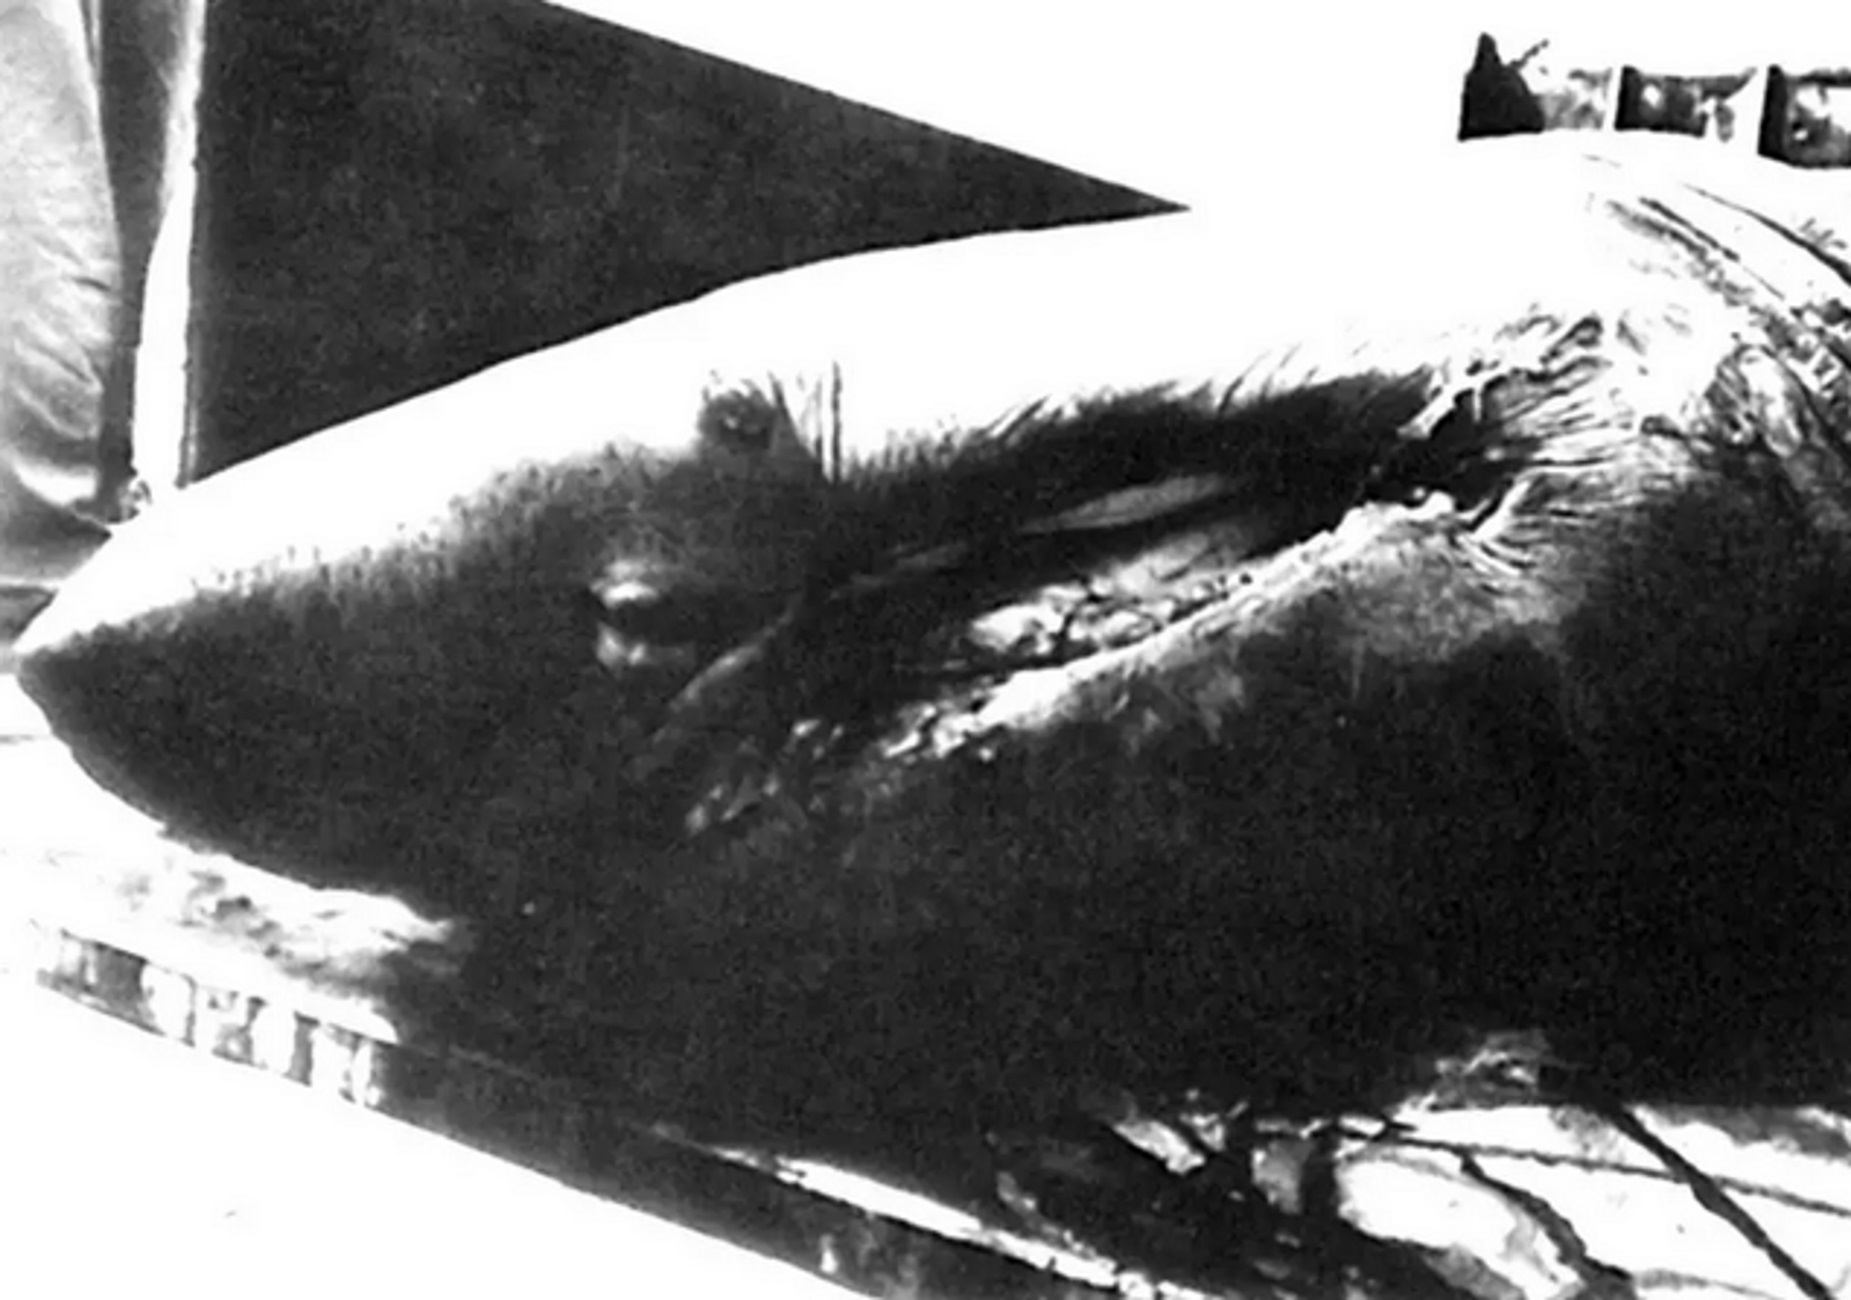 Άγιοι Θεόδωροι: Το καρχαριοειδές των 7,5 μέτρων που ζύγιζε 2,5 τόνους και σήκωσαν ψαράδες το 1992